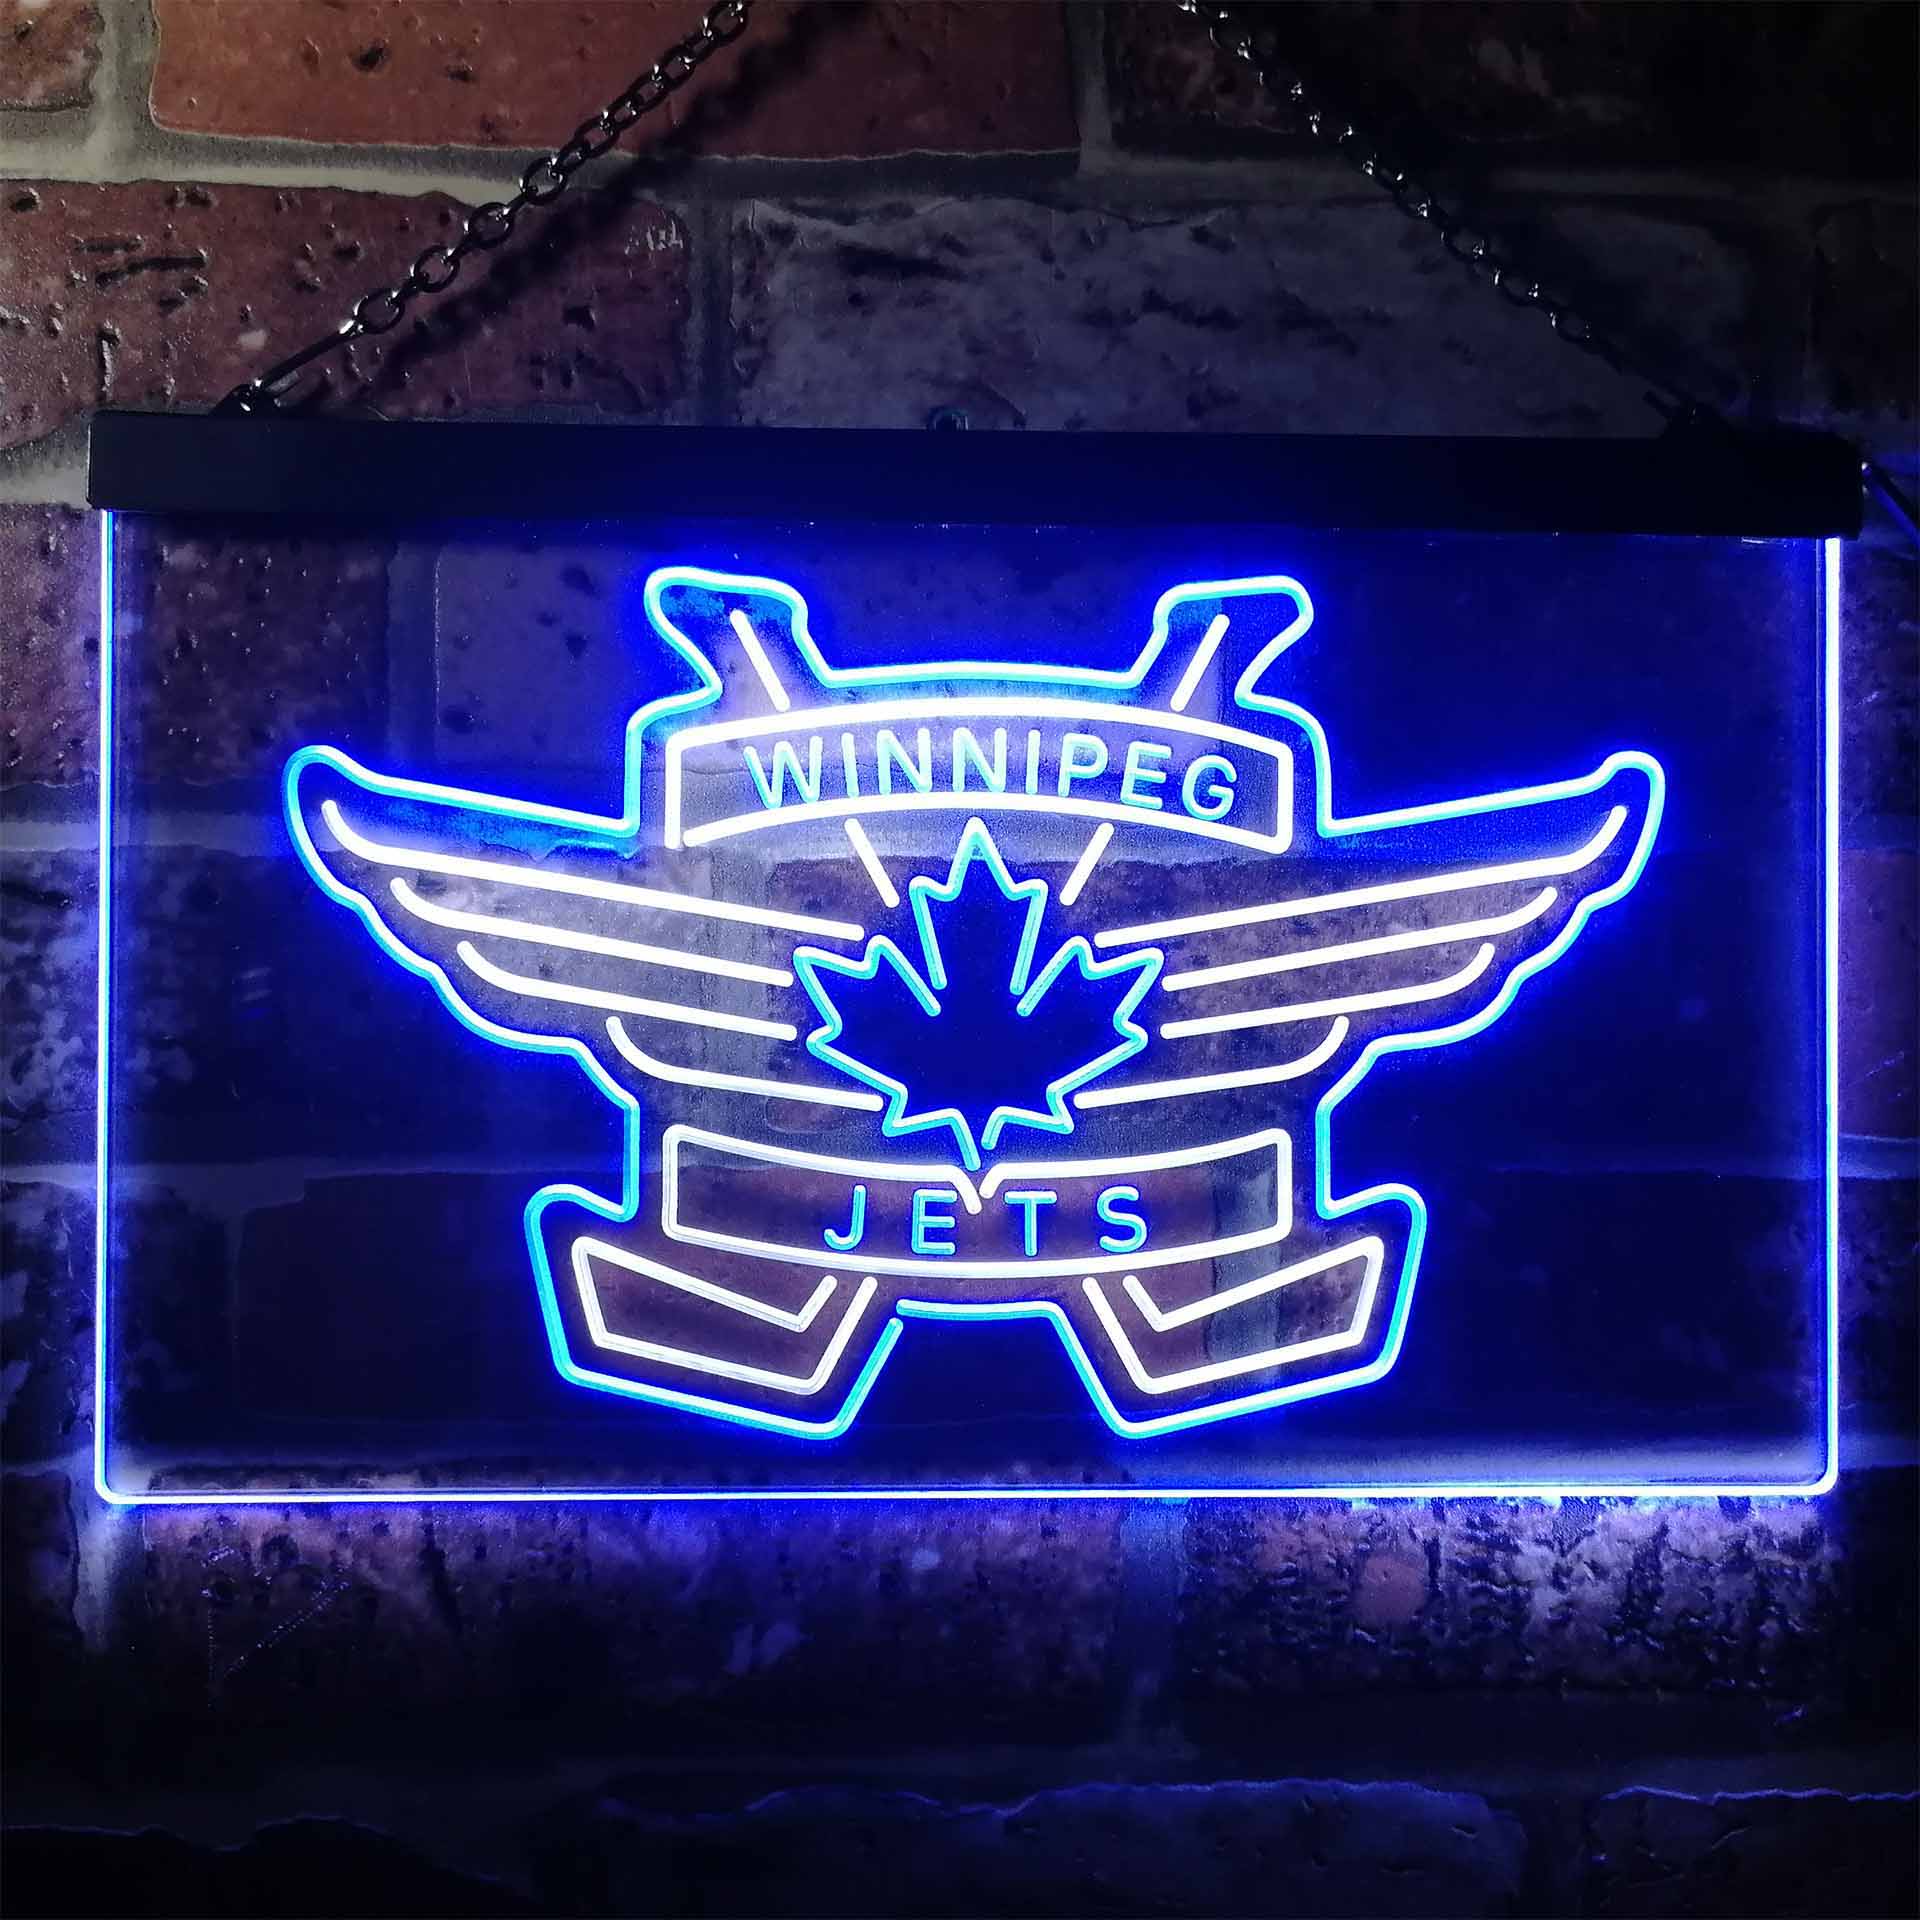 Winnipeg Jets Ice Hockey Neon-Like LED Sign - ProLedSign